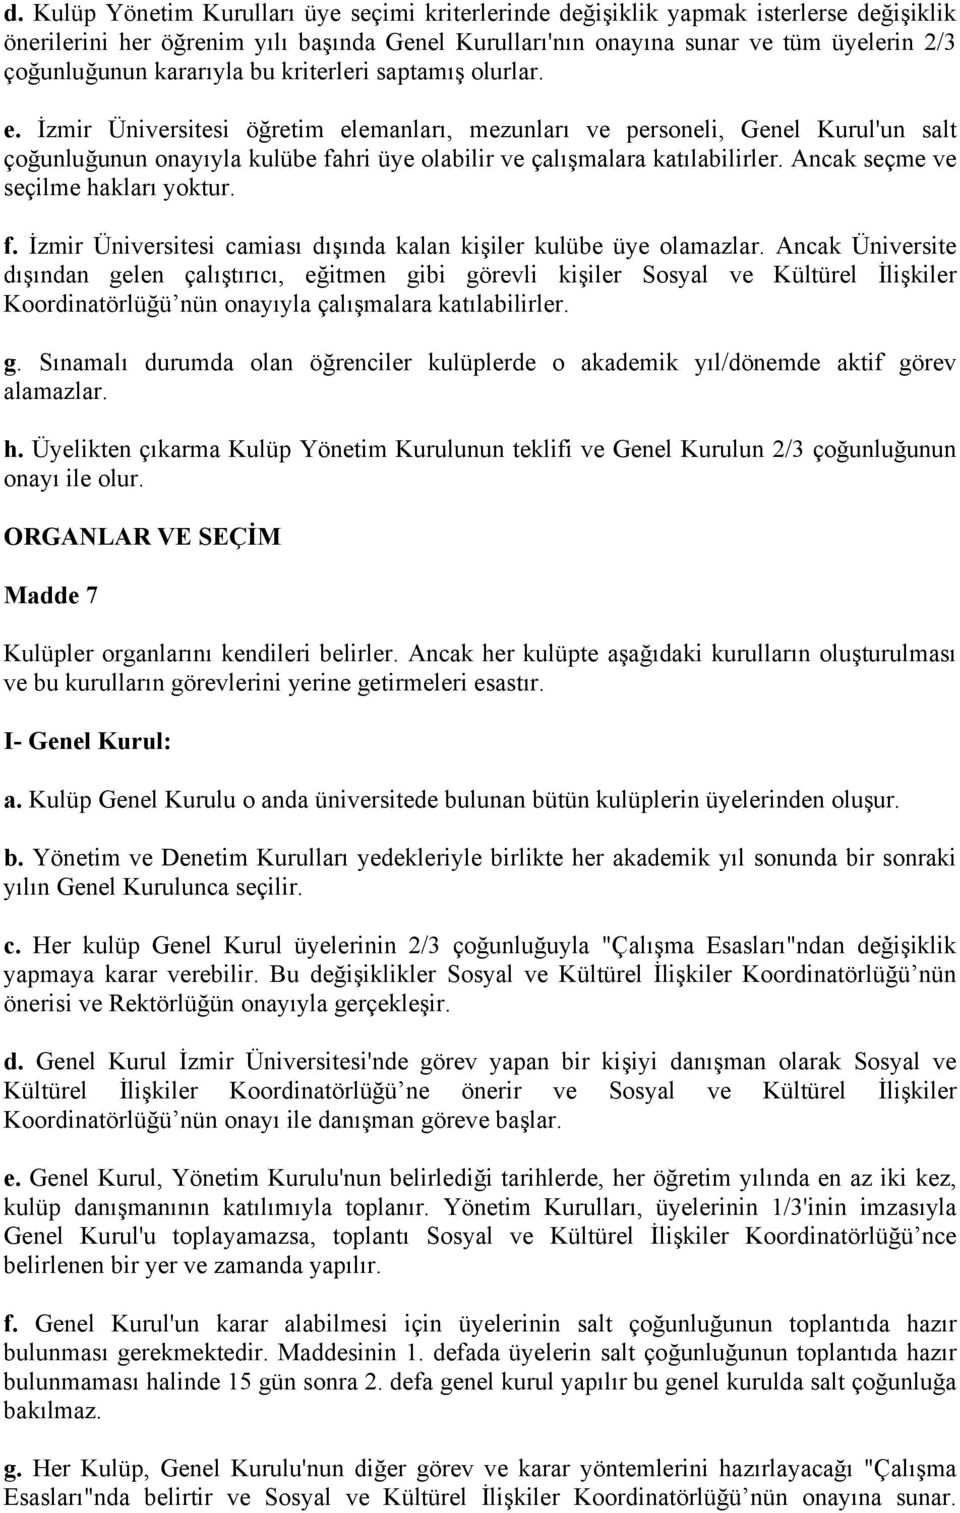 İzmir Üniversitesi öğretim elemanları, mezunları ve personeli, Genel Kurul'un salt çoğunluğunun onayıyla kulübe fahri üye olabilir ve çalışmalara katılabilirler. Ancak seçme ve seçilme hakları yoktur.